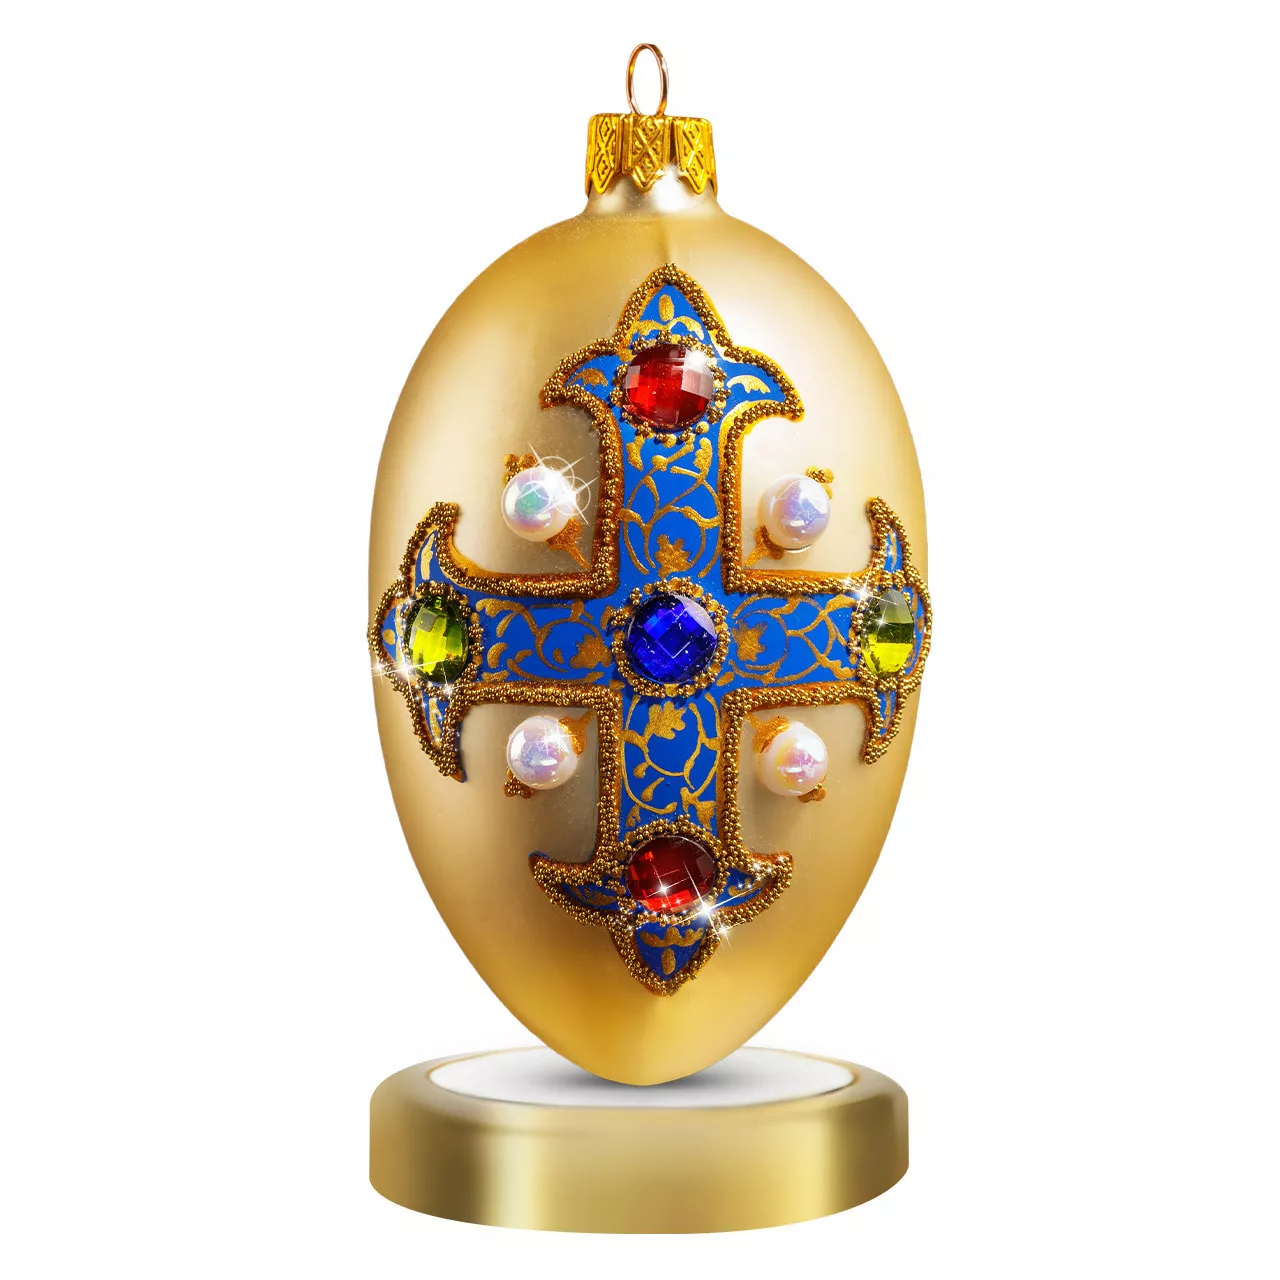 Игрушка новогодняя Crystal Christmas Royal Emblem Gold, размер 12х6 см (CRE003) - Фото nav 1